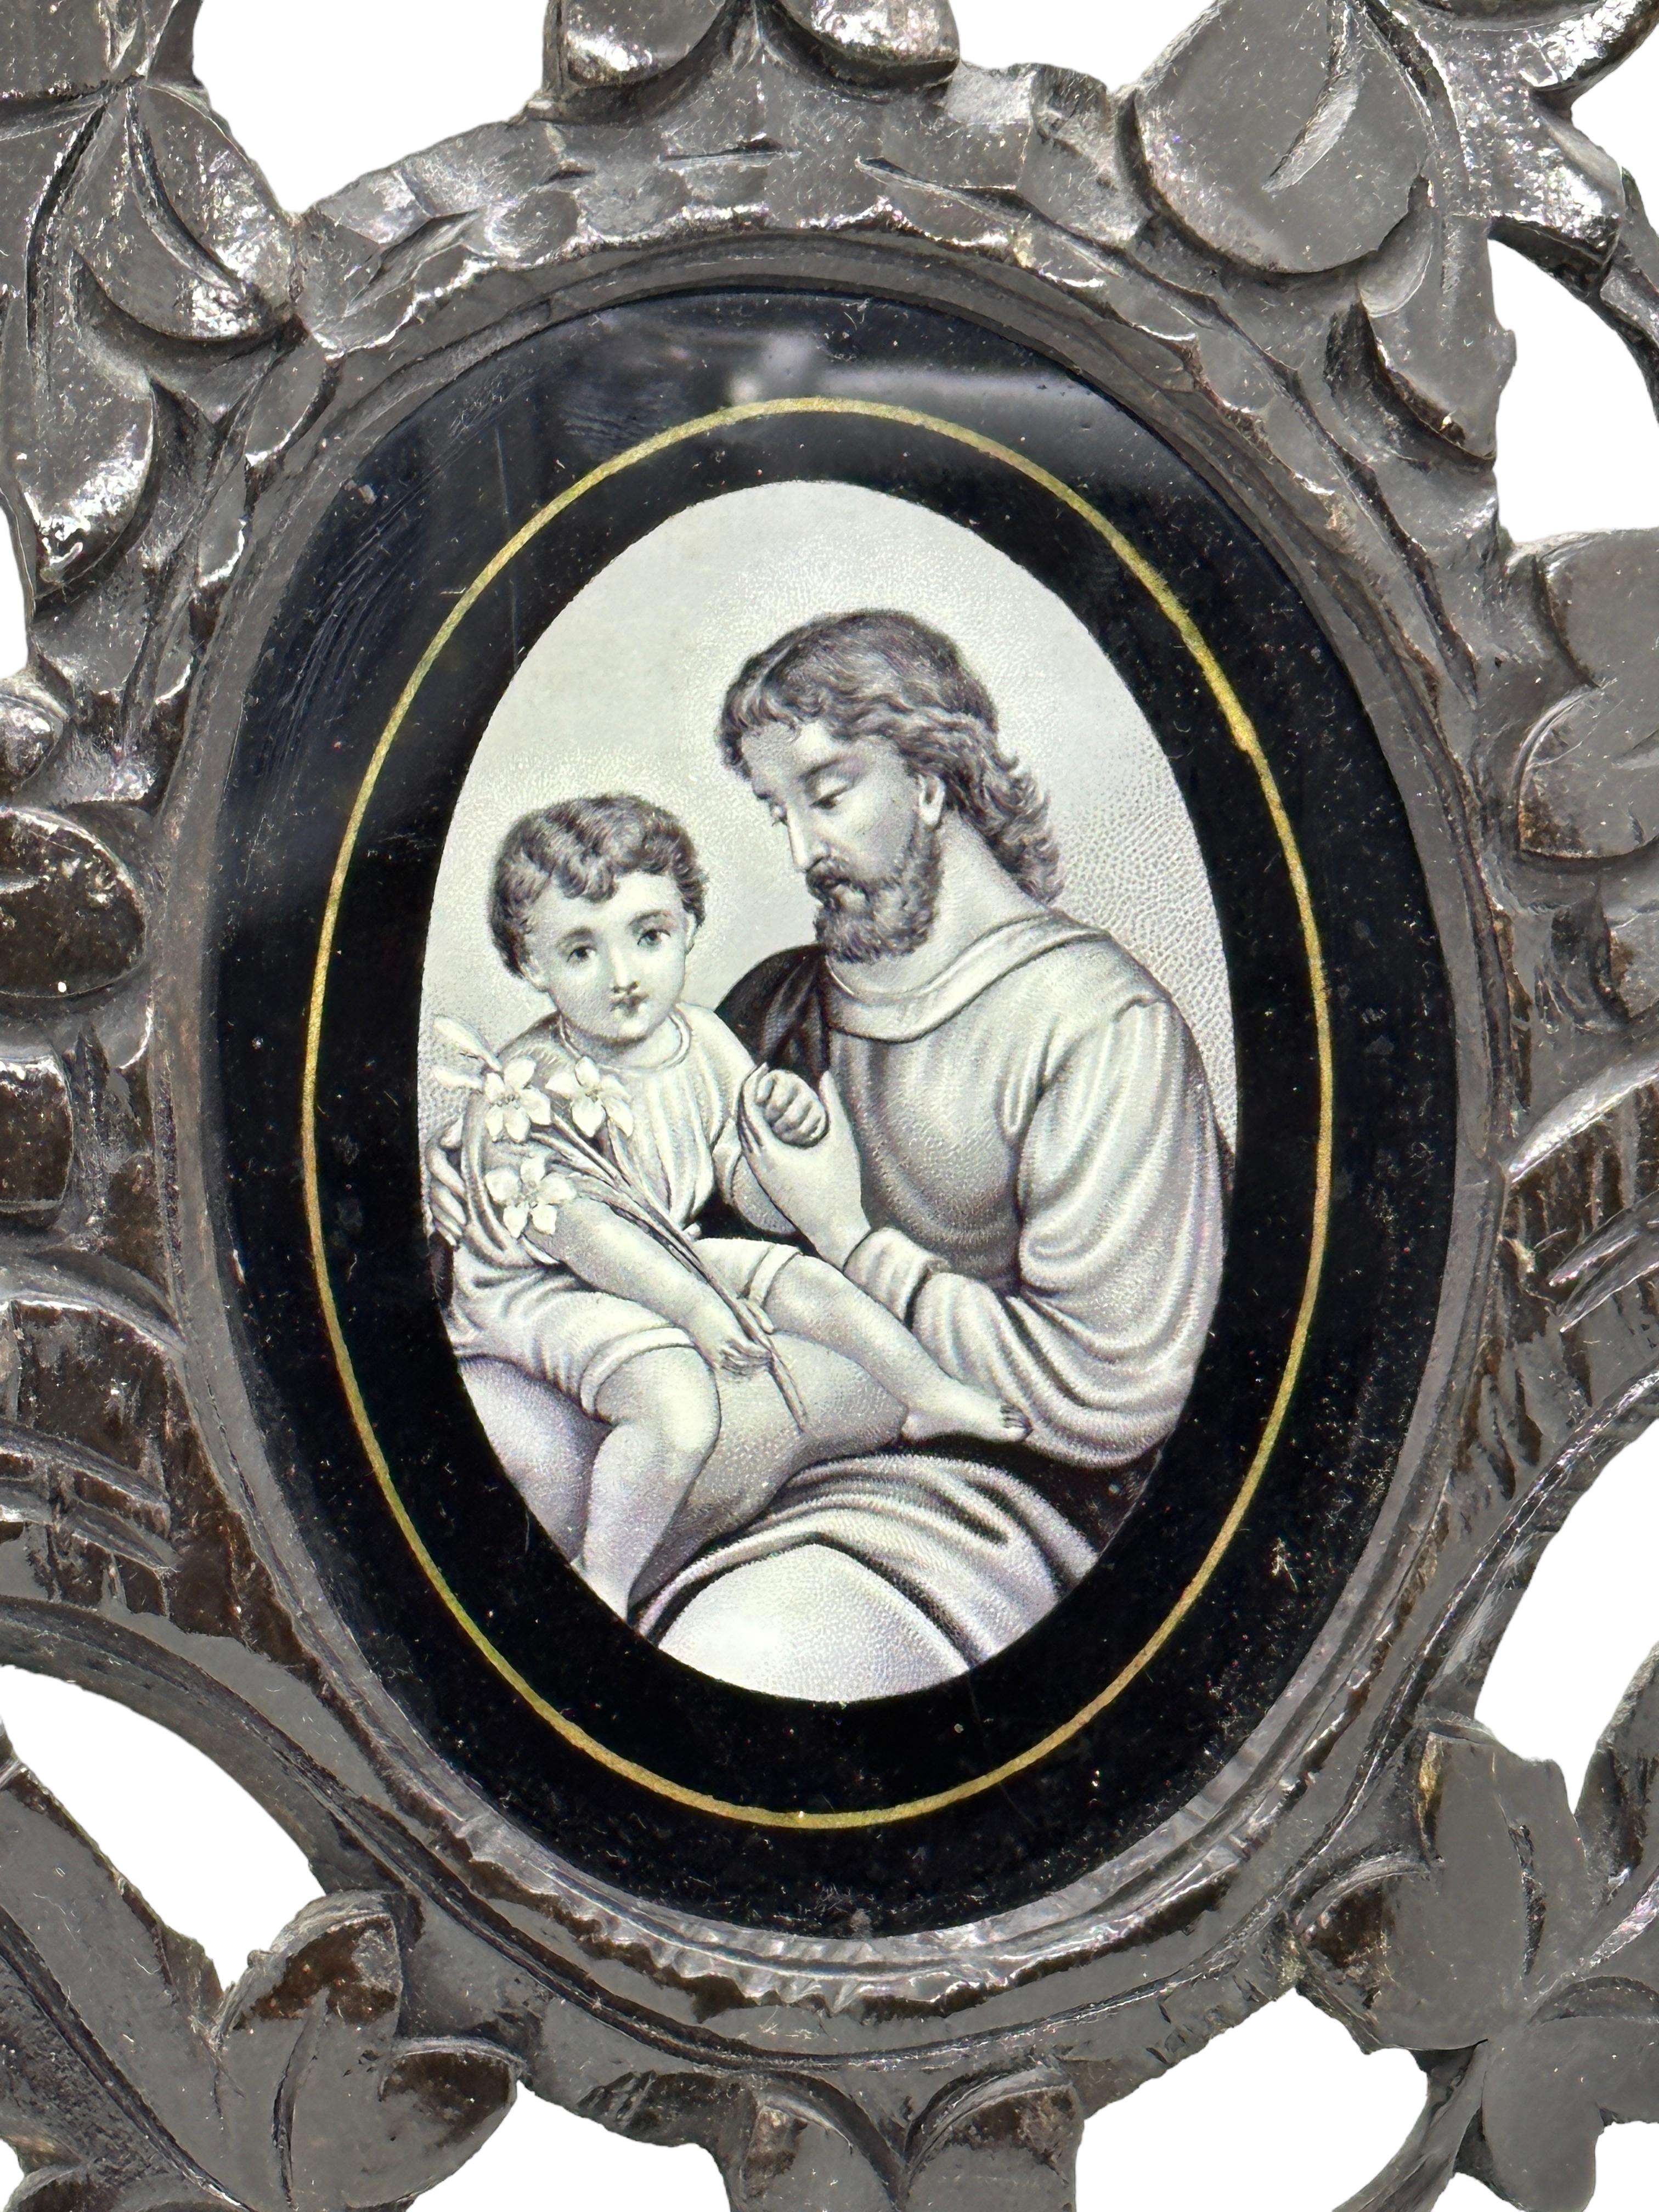 Ein schöner Bilderrahmen aus handgeschnitztem Holz, hergestellt in Deutschland mit einem Bild von Jesus und einem Kind. Gefunden bei einem Nachlassverkauf in Nürnberg, Deutschland. Sie ist nicht gekennzeichnet. Eine schöne Ergänzung für Ihre